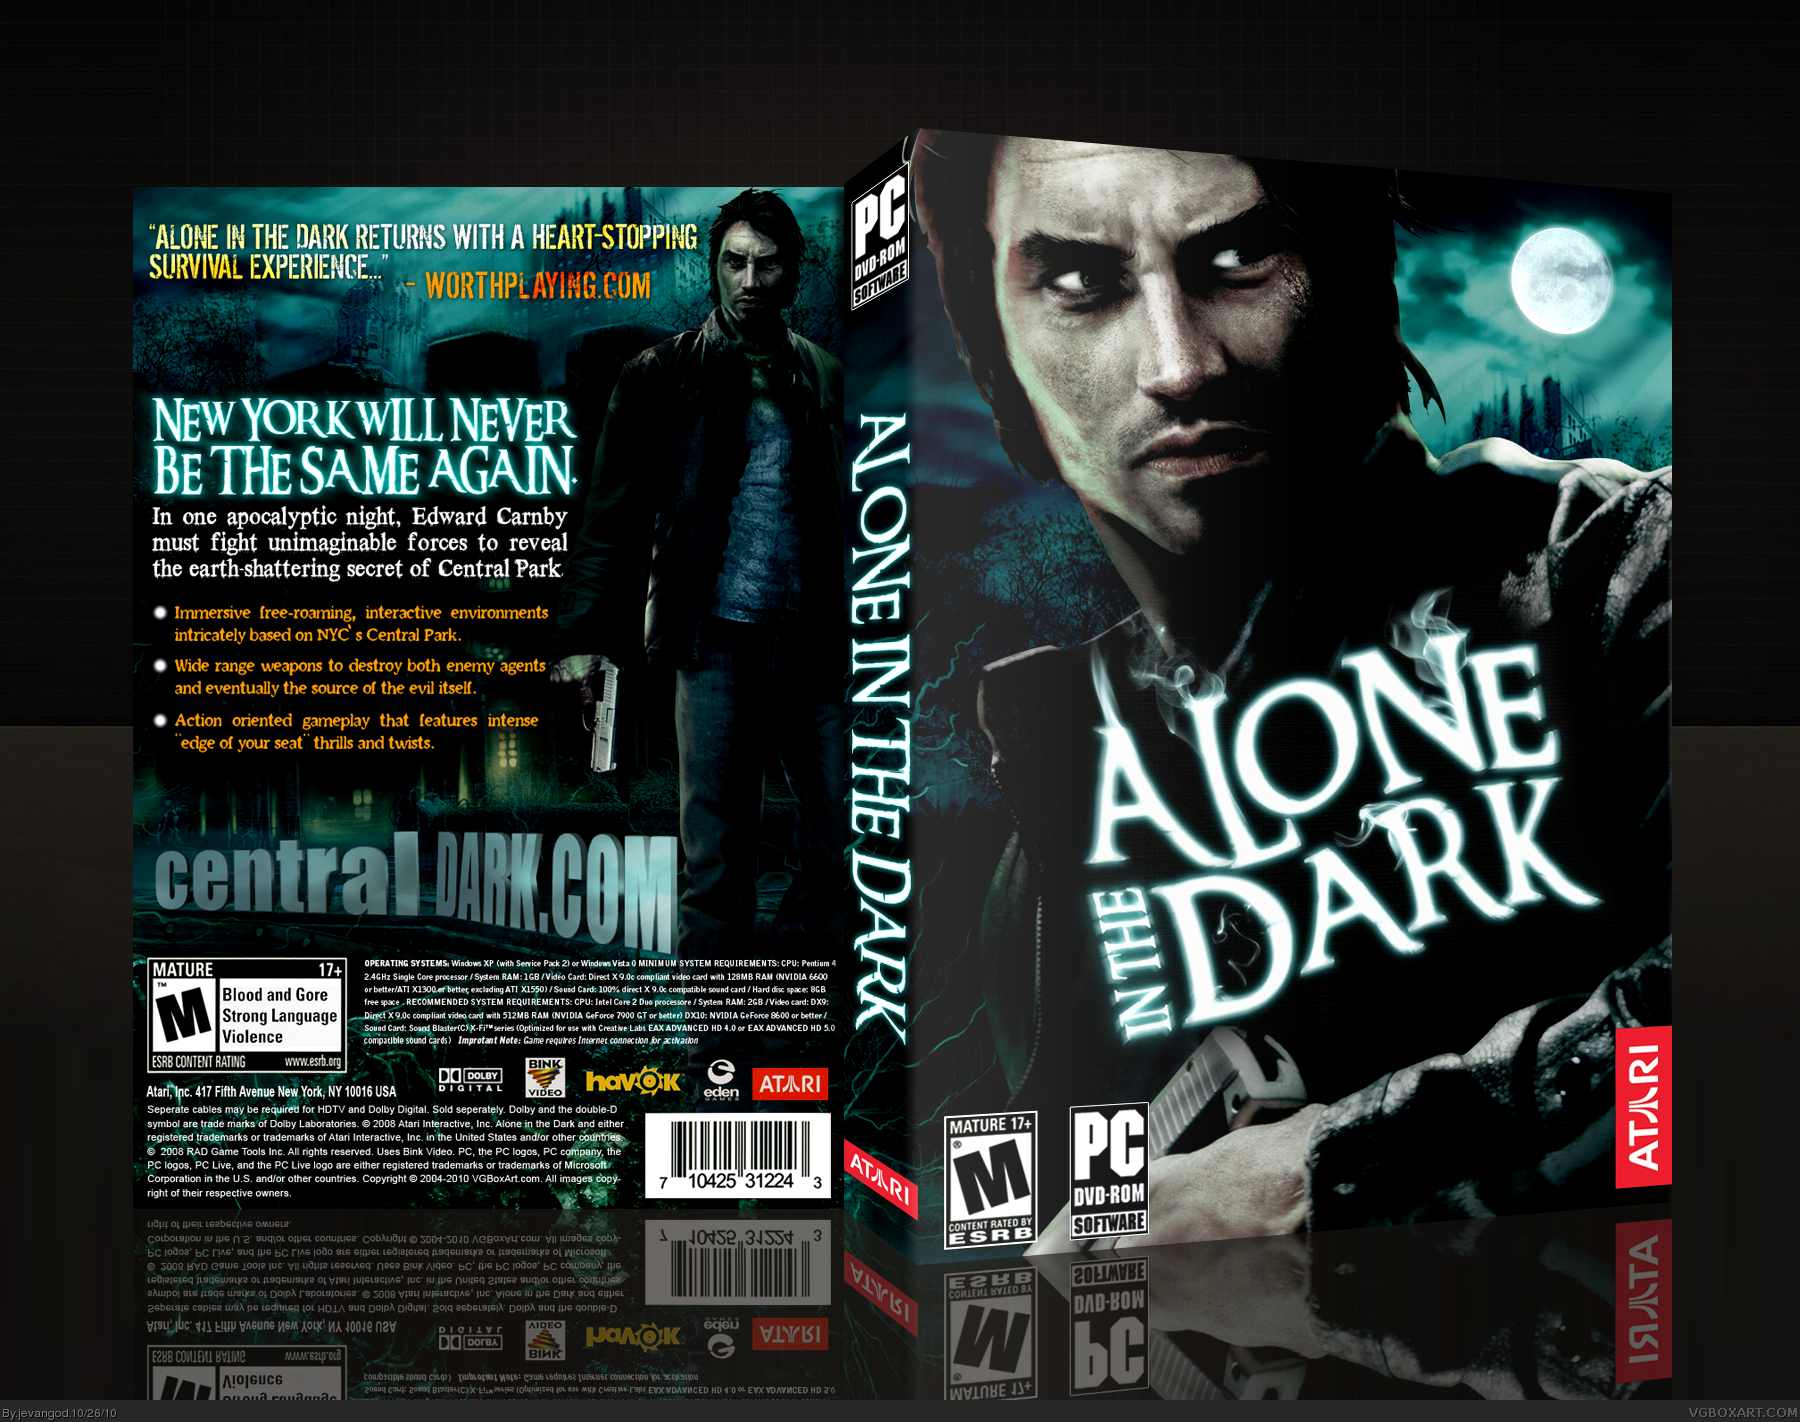 Alone in the Dark box cover